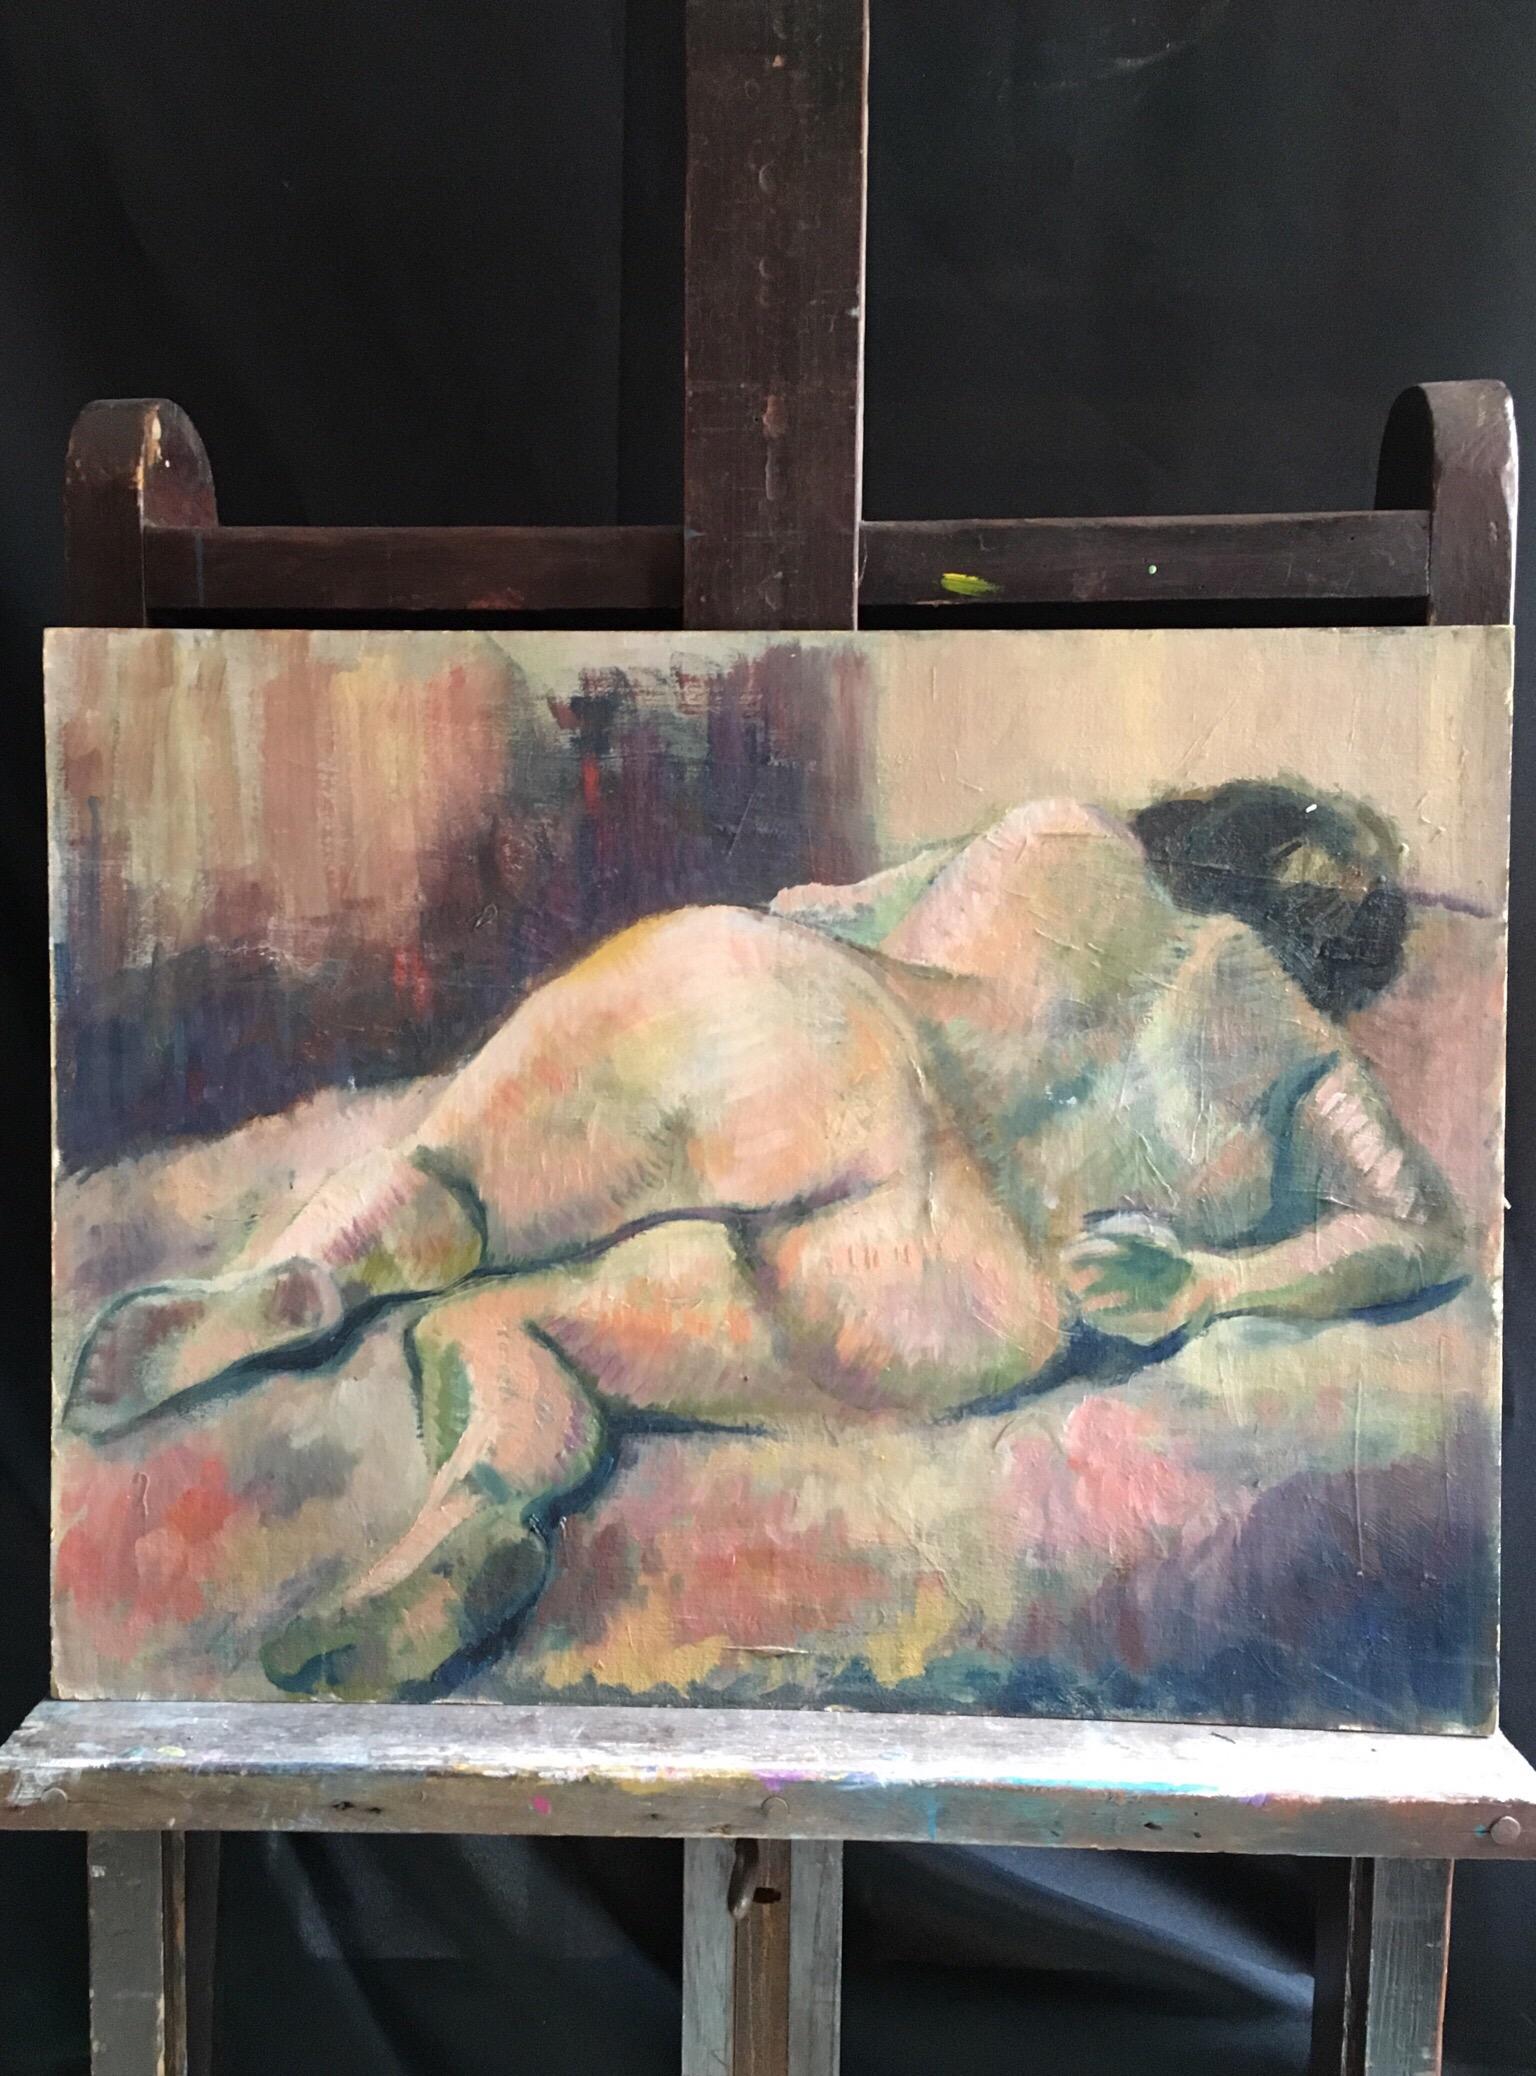 Femme nue abstraite Peinture à l'huile Milieu du 20ème siècle Artiste britannique moderne - Impressionnisme Painting par Beryl Darton